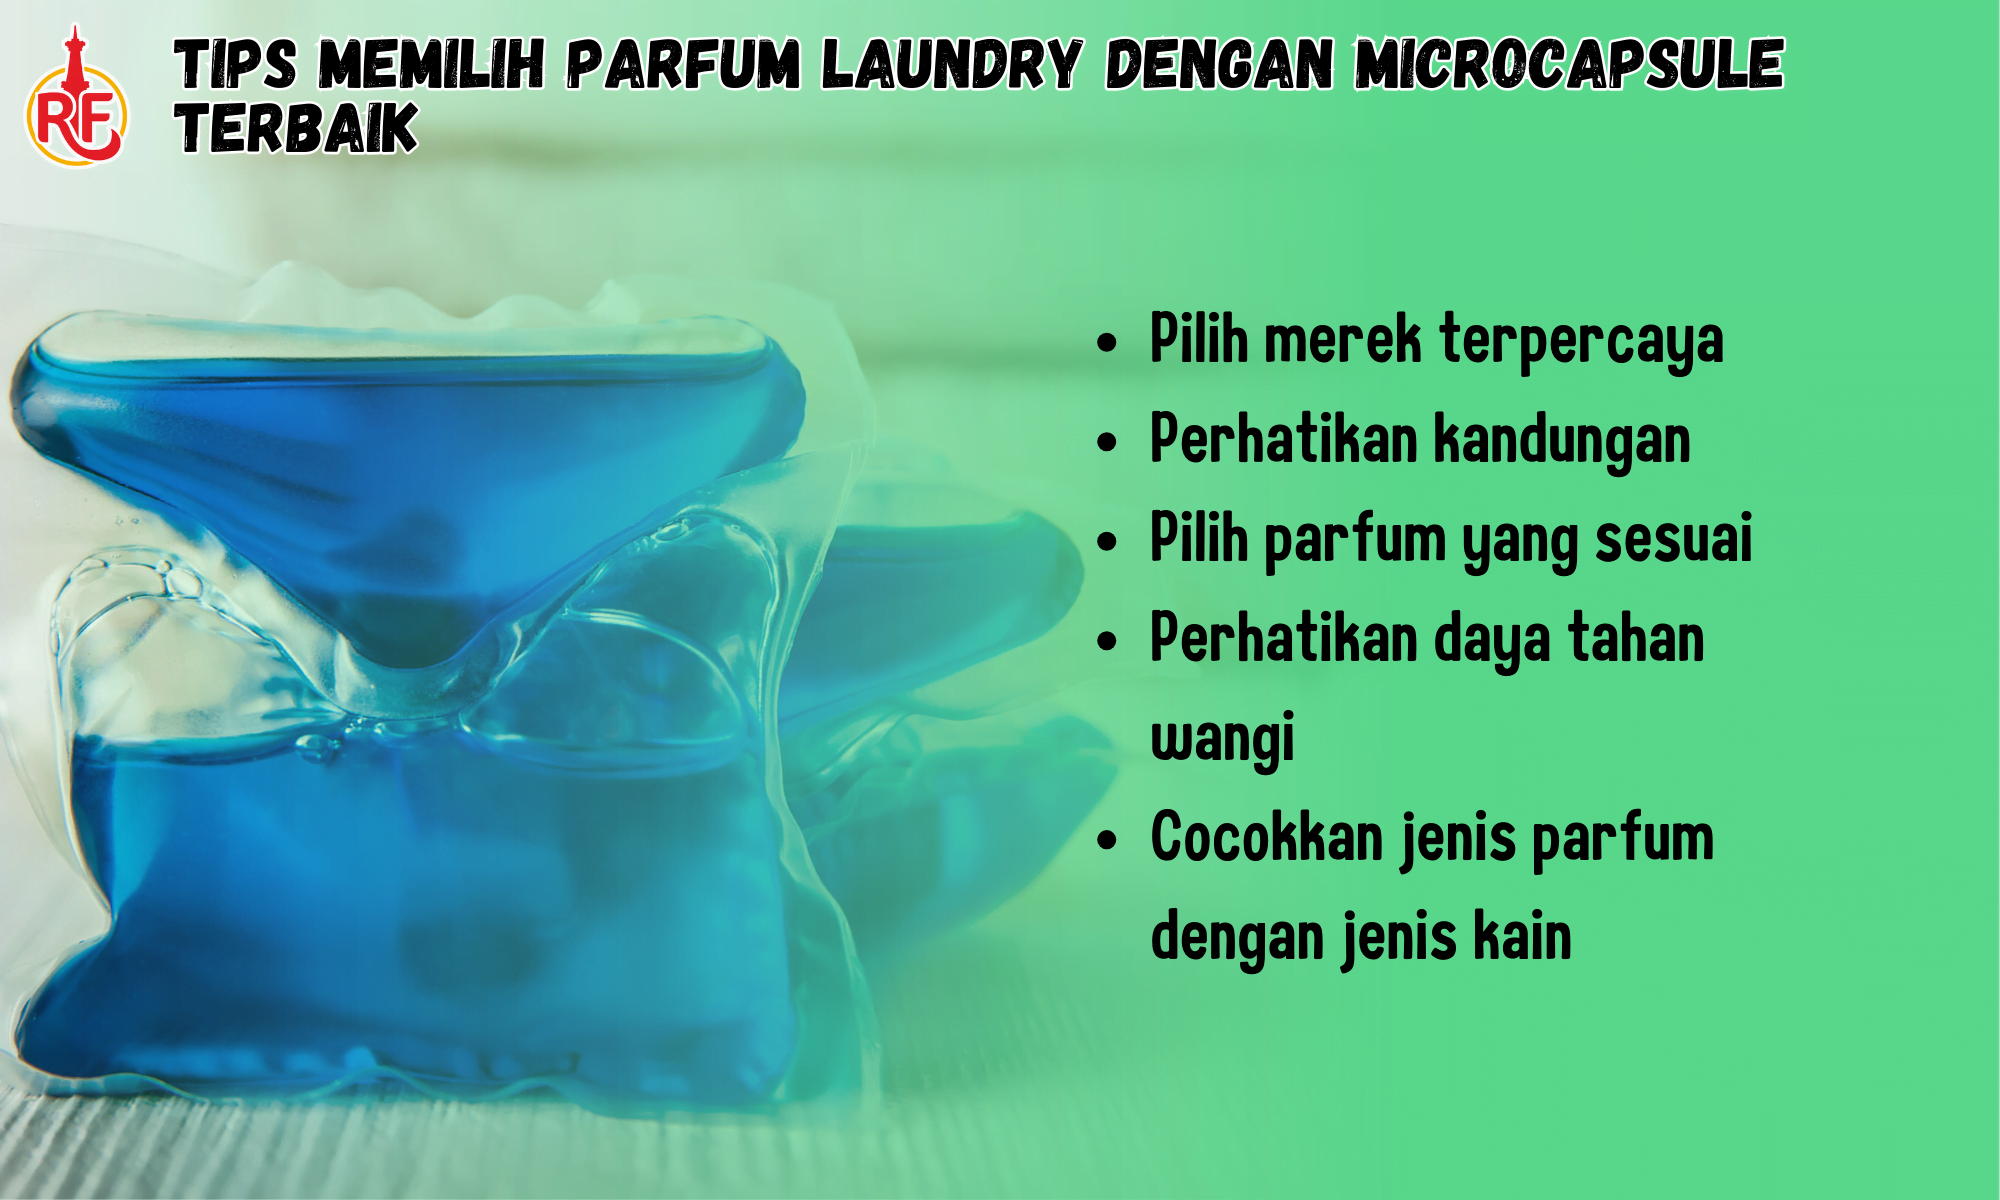 Tips Memilih Parfum Laundry